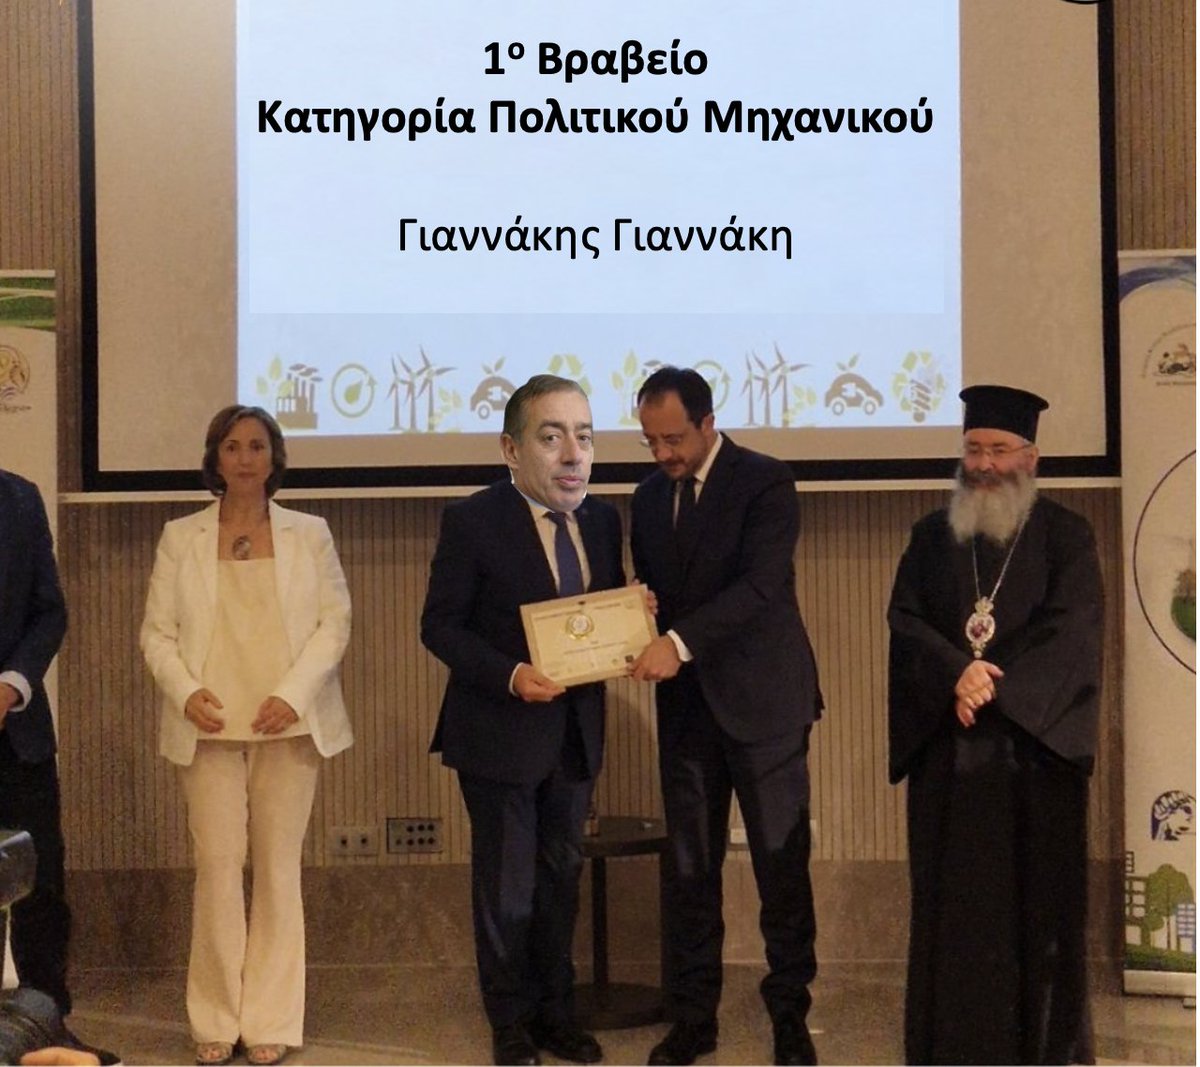 Ο Πρόεδρος της Δημοκρατίας απένεμε βραβείο για τον καλύτερο πολίτικο μηχανικό με εξειδίκευση στις πολιτικές επιστήμες, στον Γιαννακη Γιαννακη 12 (Nineteen)